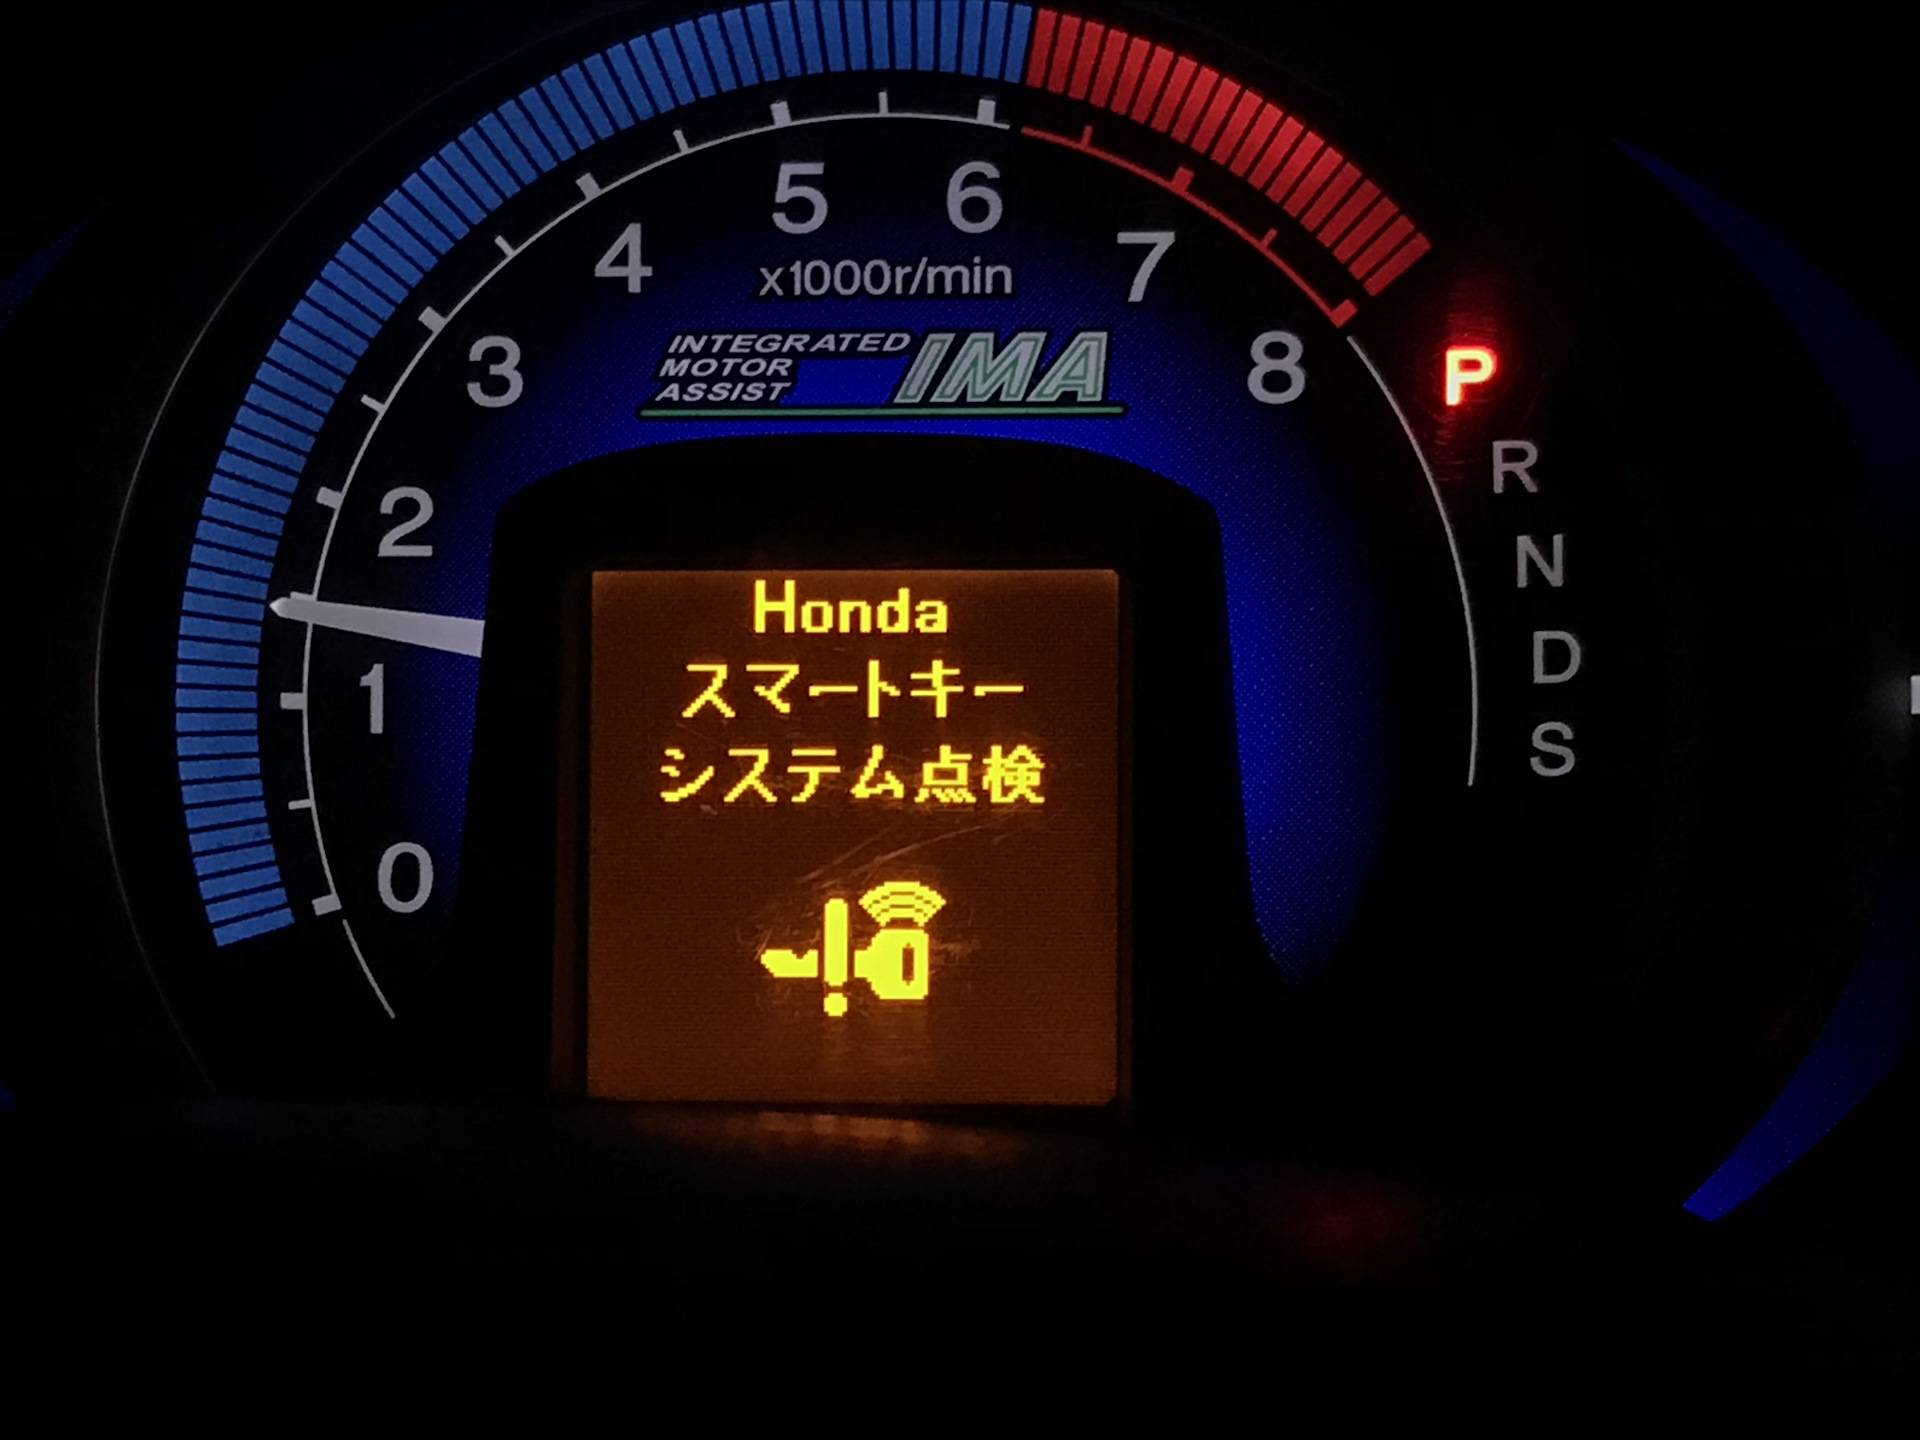 Honda fit ошибки. Датчики значки на панели Honda Fit 2002. Приборная панель Honda Insight 2009. Honda Fit 2017 индикатор батареи на приборной панели. Значки на панели Хонда фит гибрид.